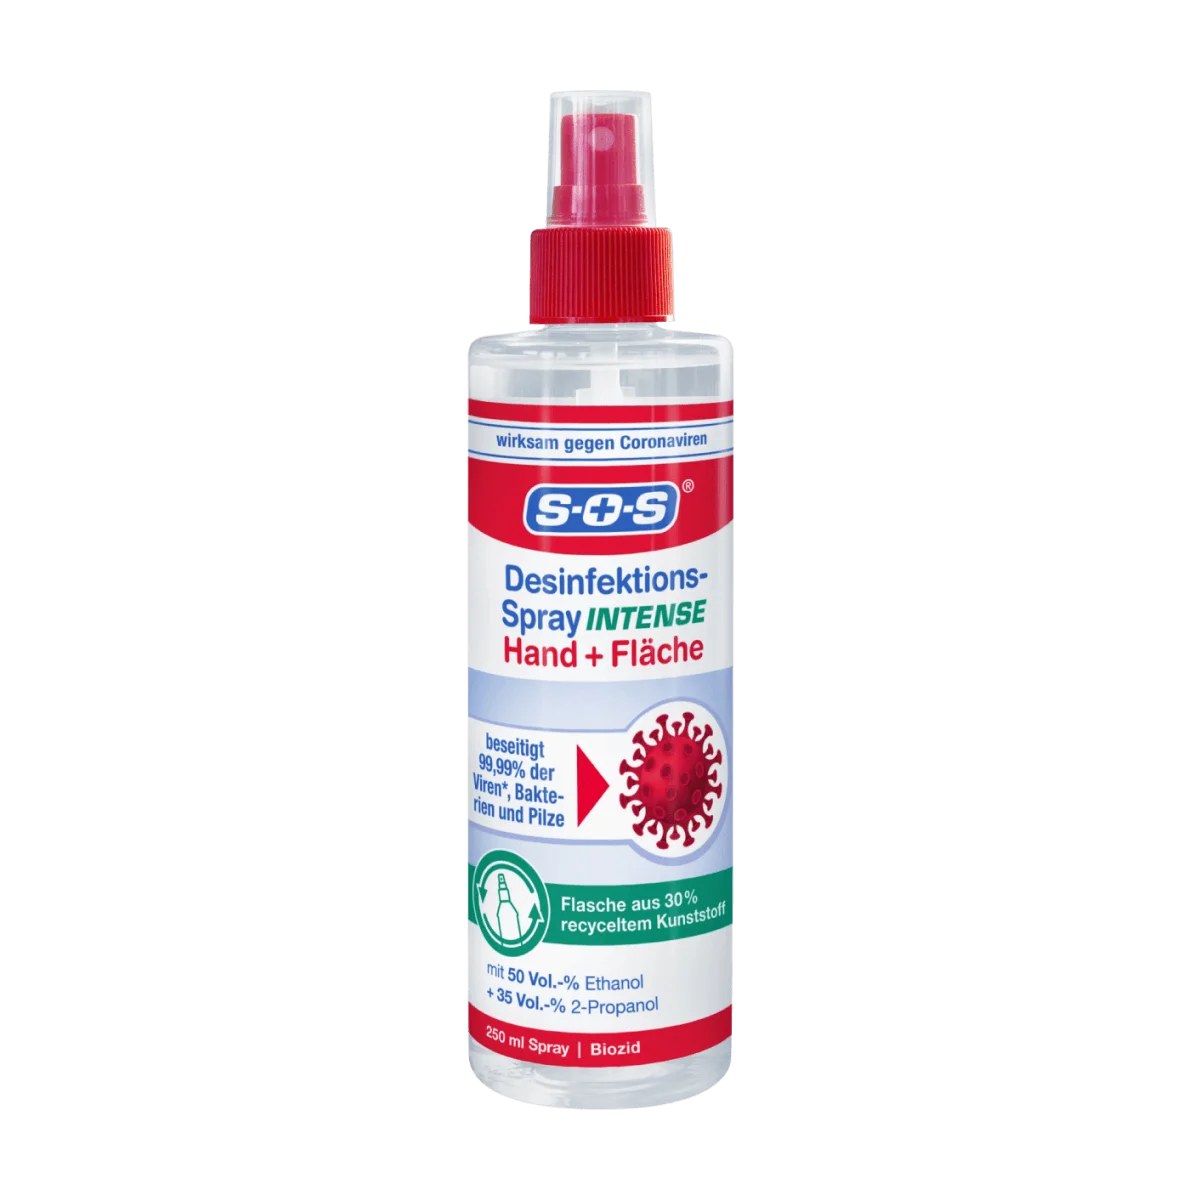 SOS Desinfektionsspray Intense Hand & Fläche, 250 ml